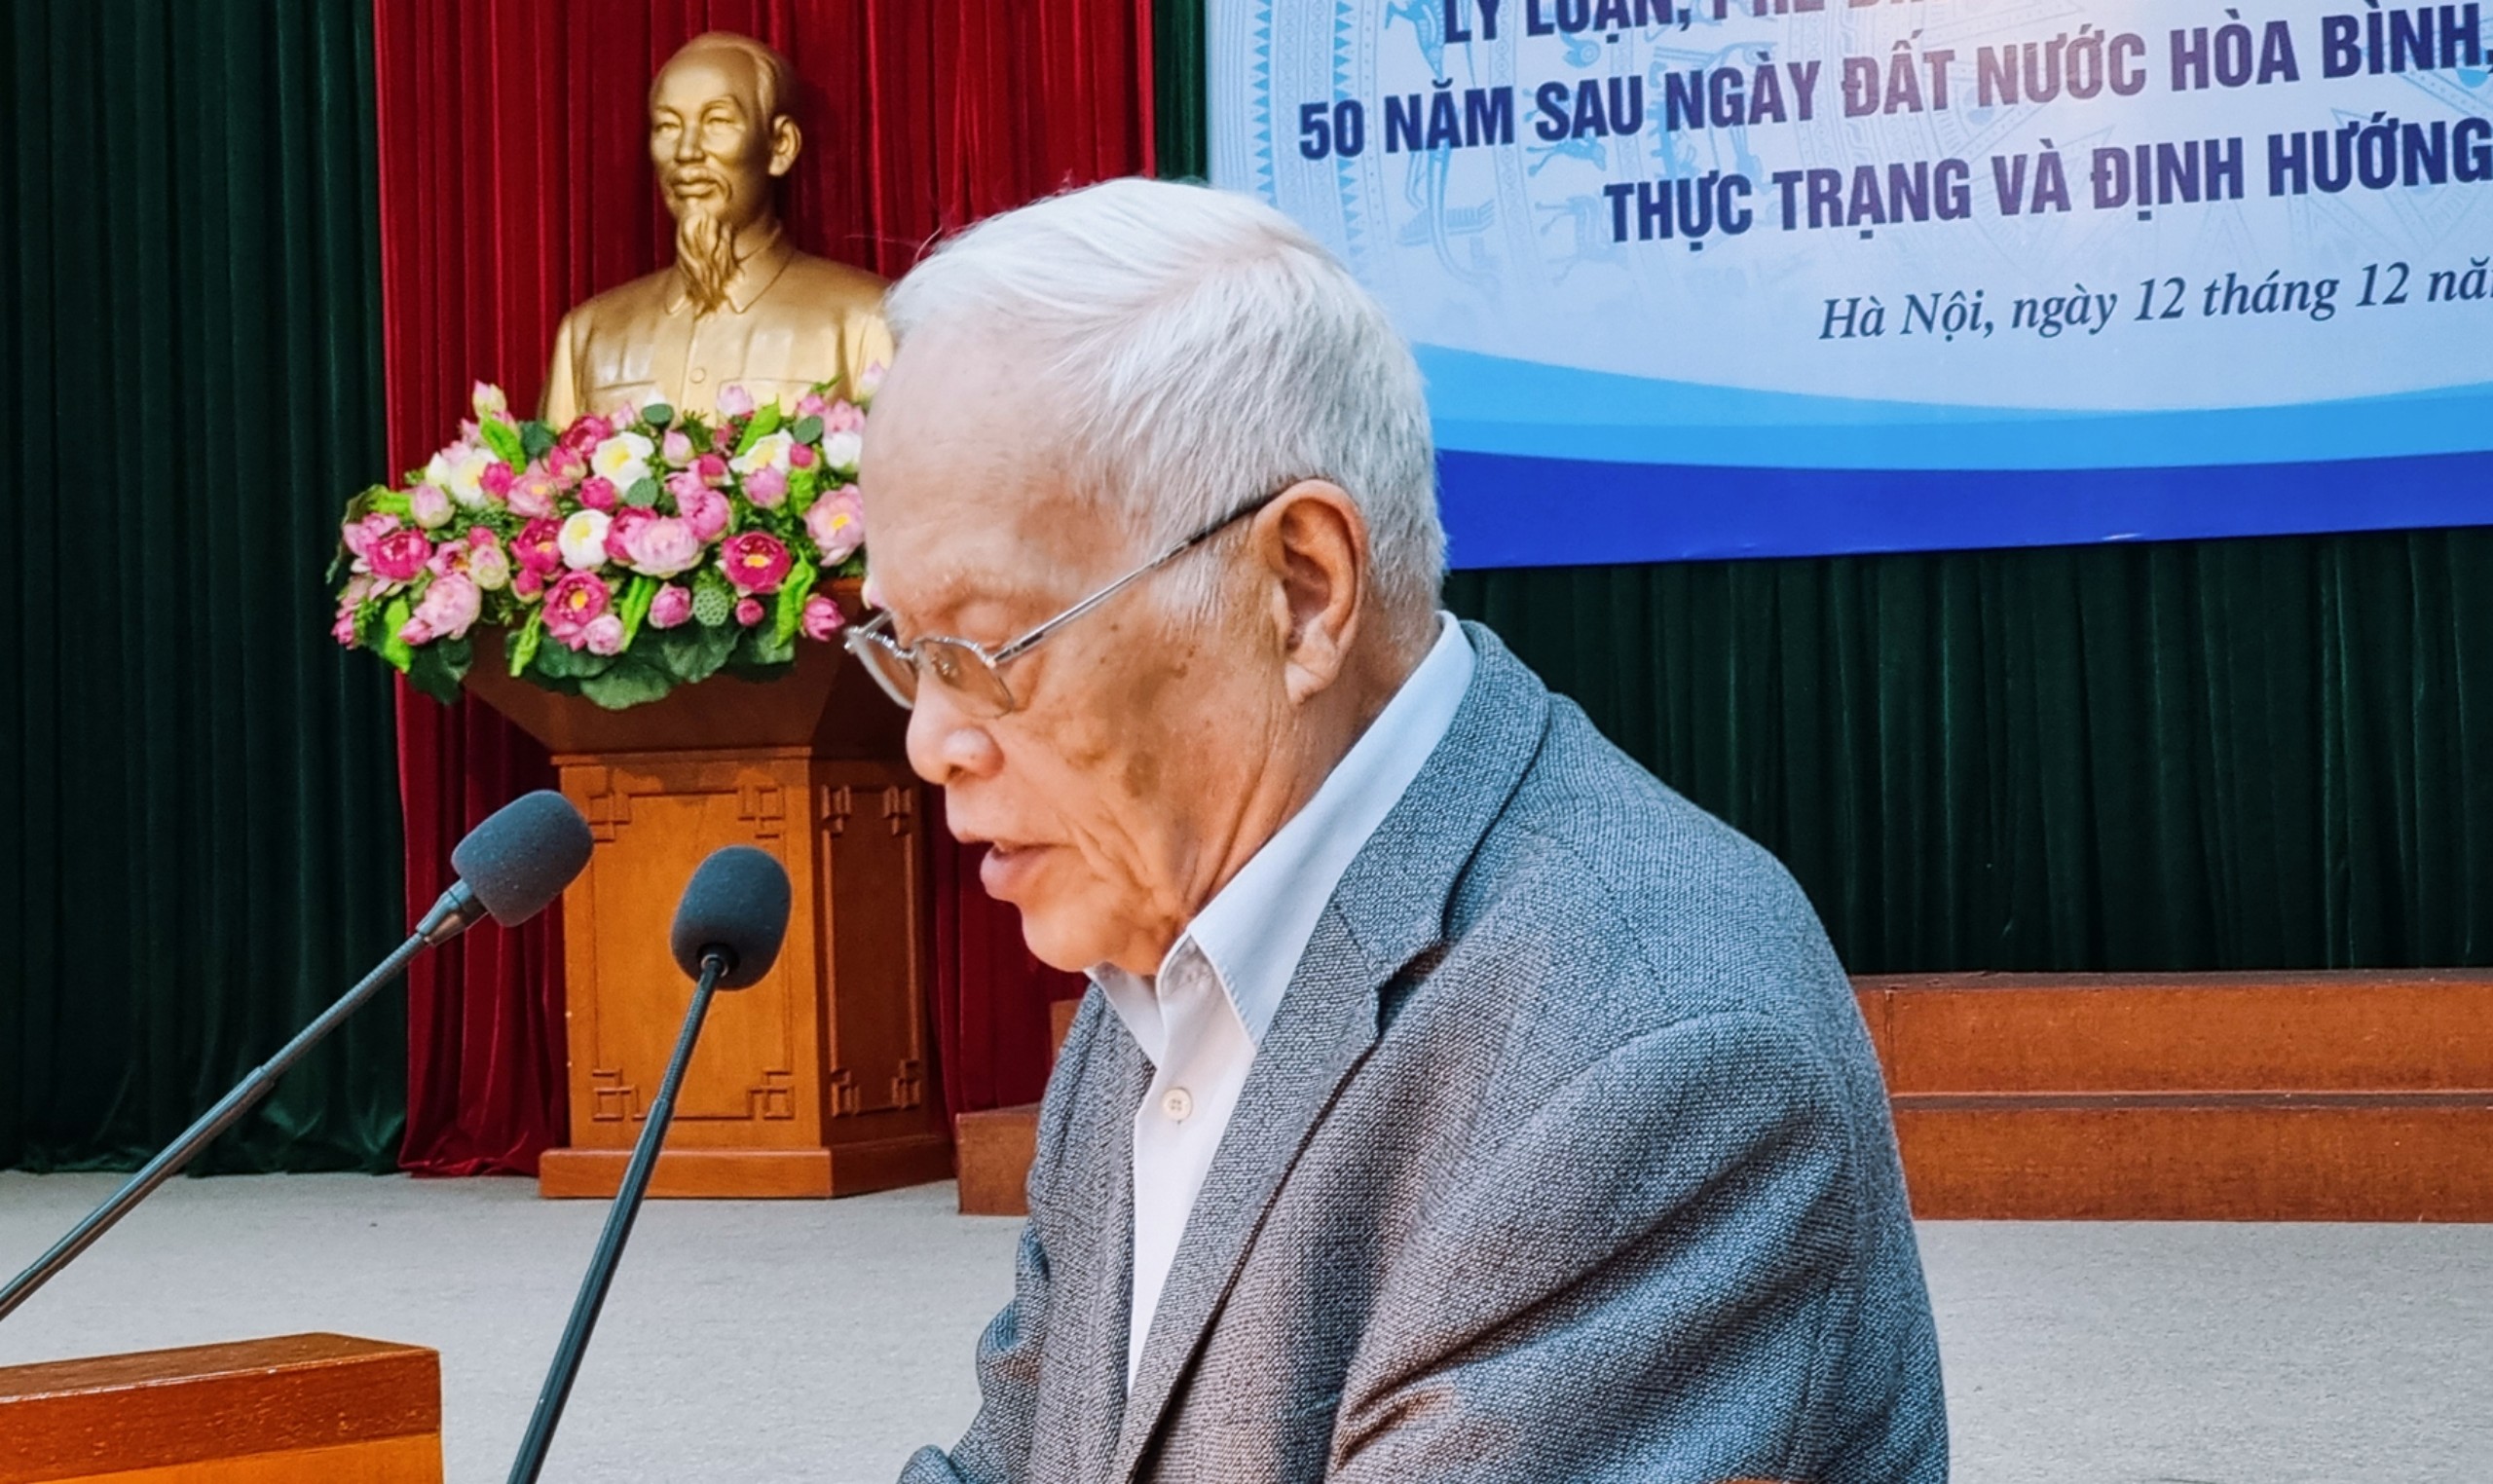 Tổng kết lý luận, phê bình văn học, nghệ thuật Việt Nam 50 năm sau ngày đất nước hòa bình, thống nhất, đổi mới - 5